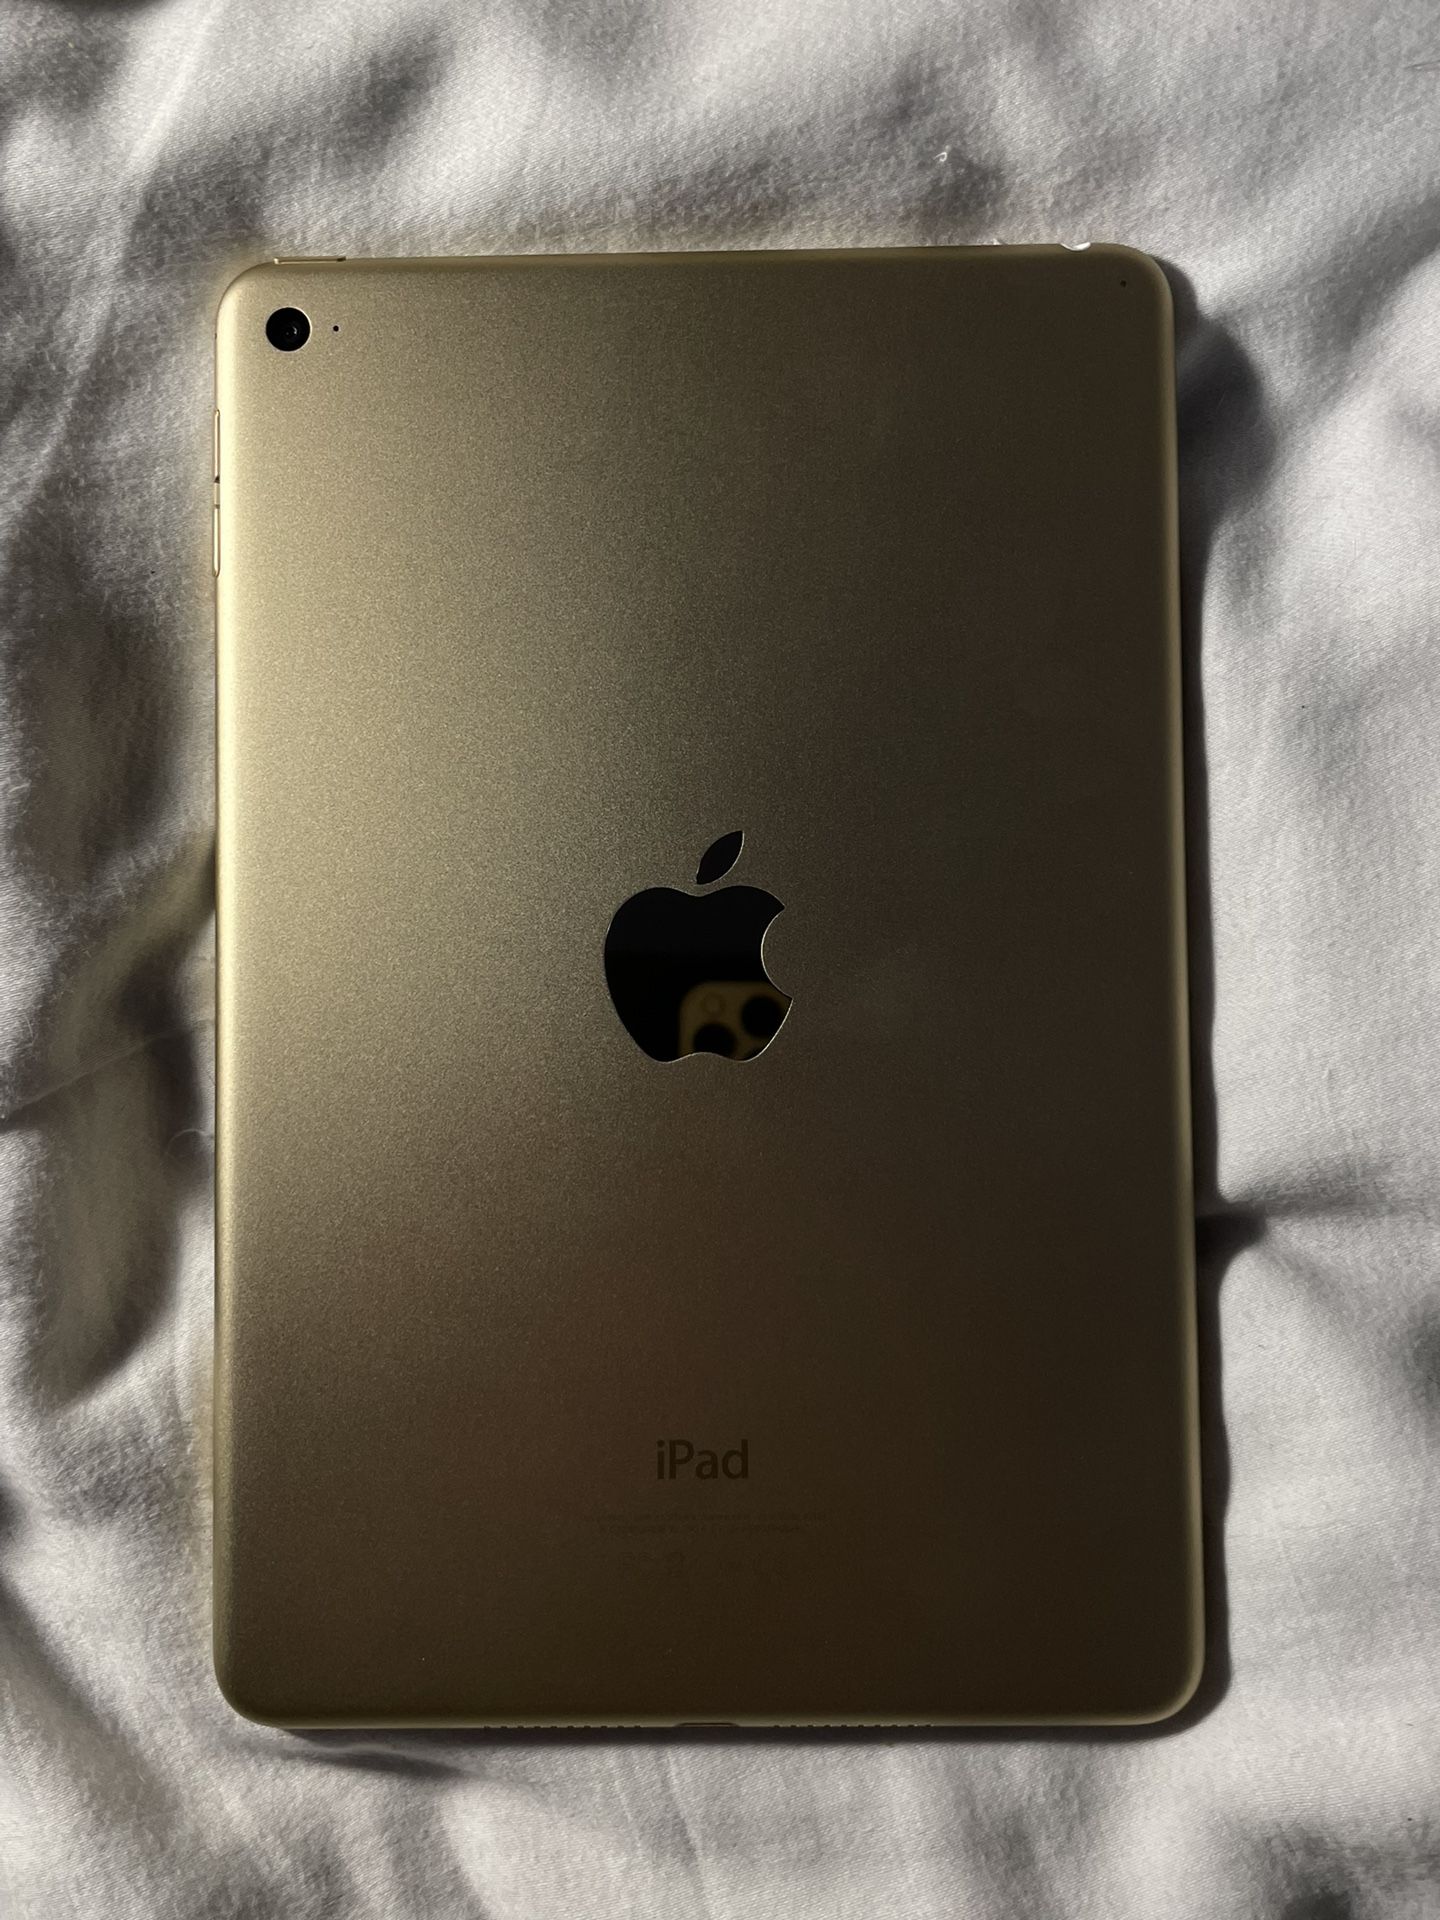 iPad Mini 4th Generation 128gb